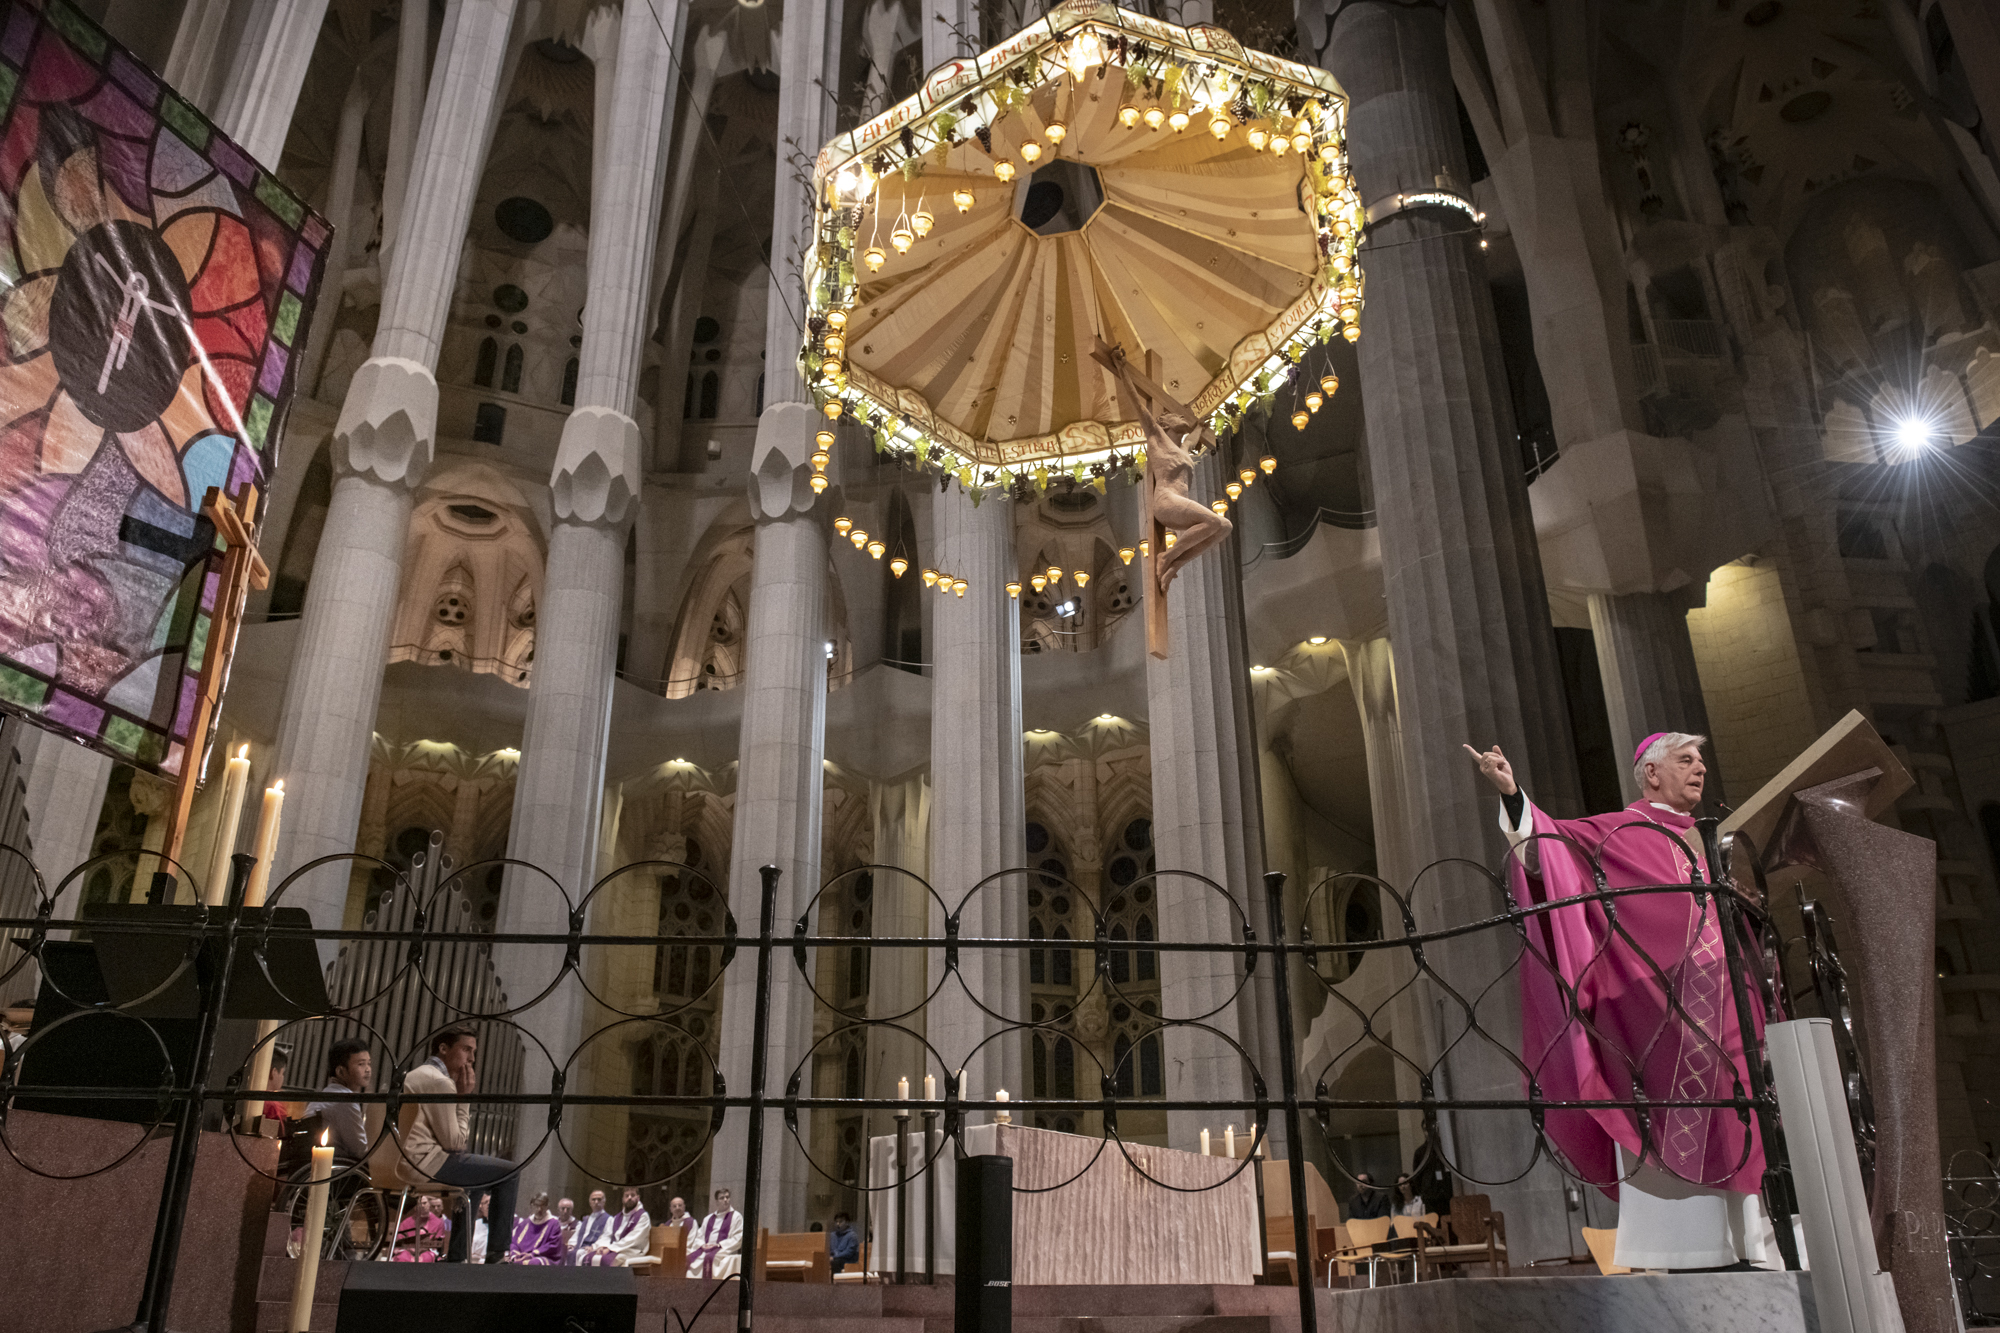 Basilica has kicked off Lent with “Sent la Creu” mass